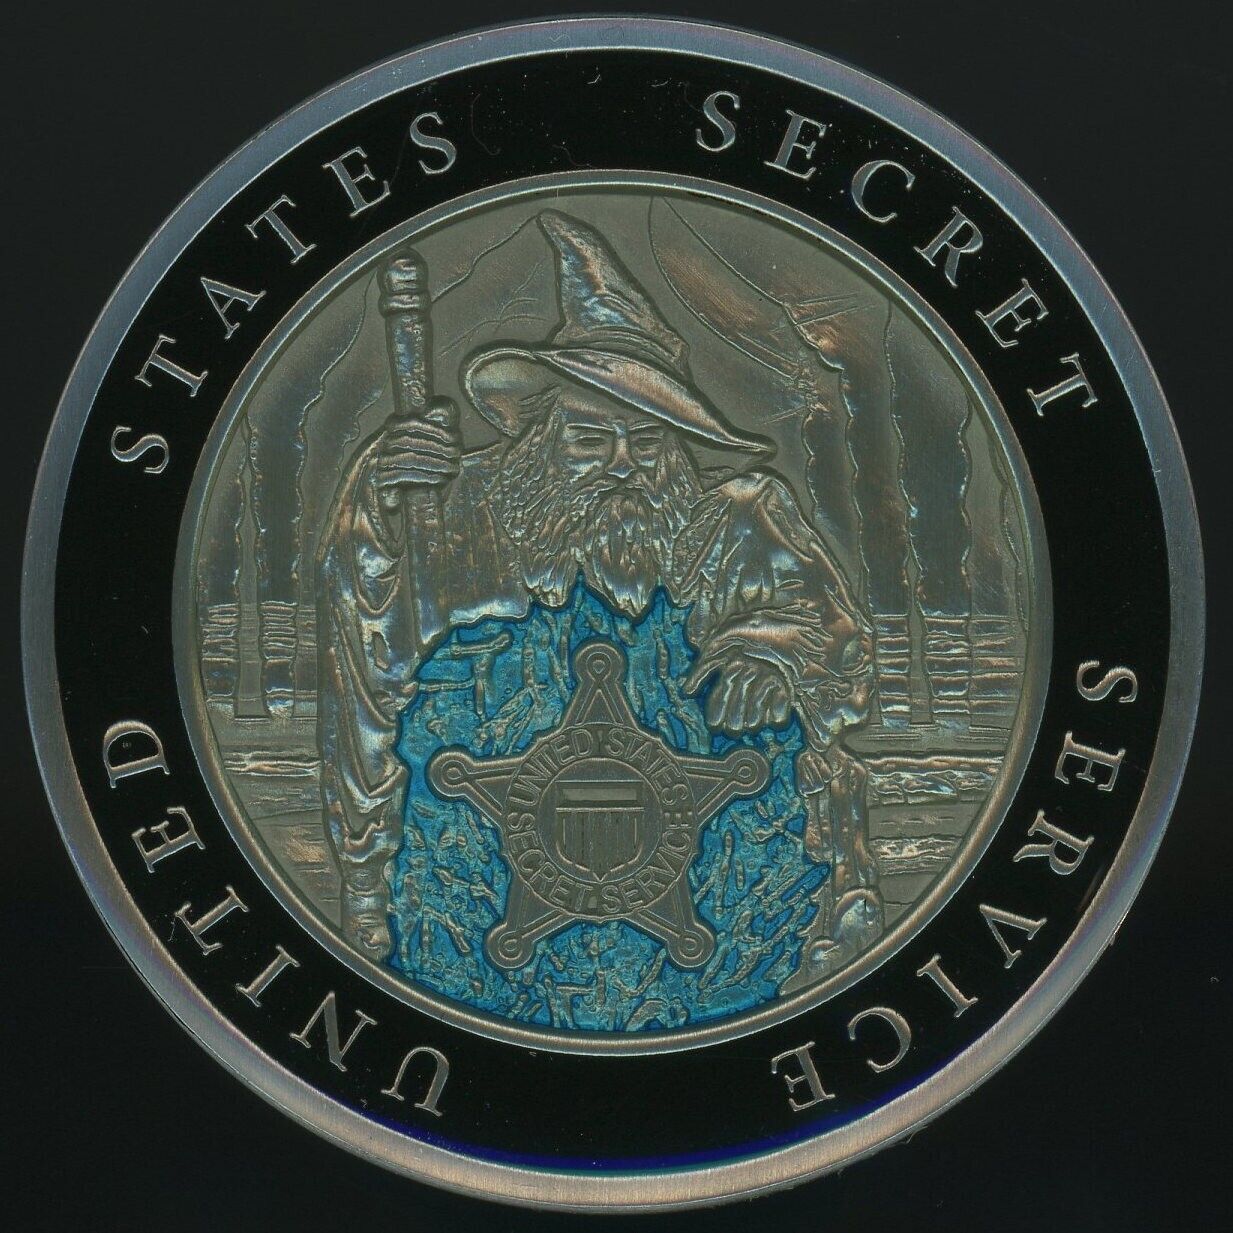 Secret Service WIZARD TSD Newest Version Challenge Coin